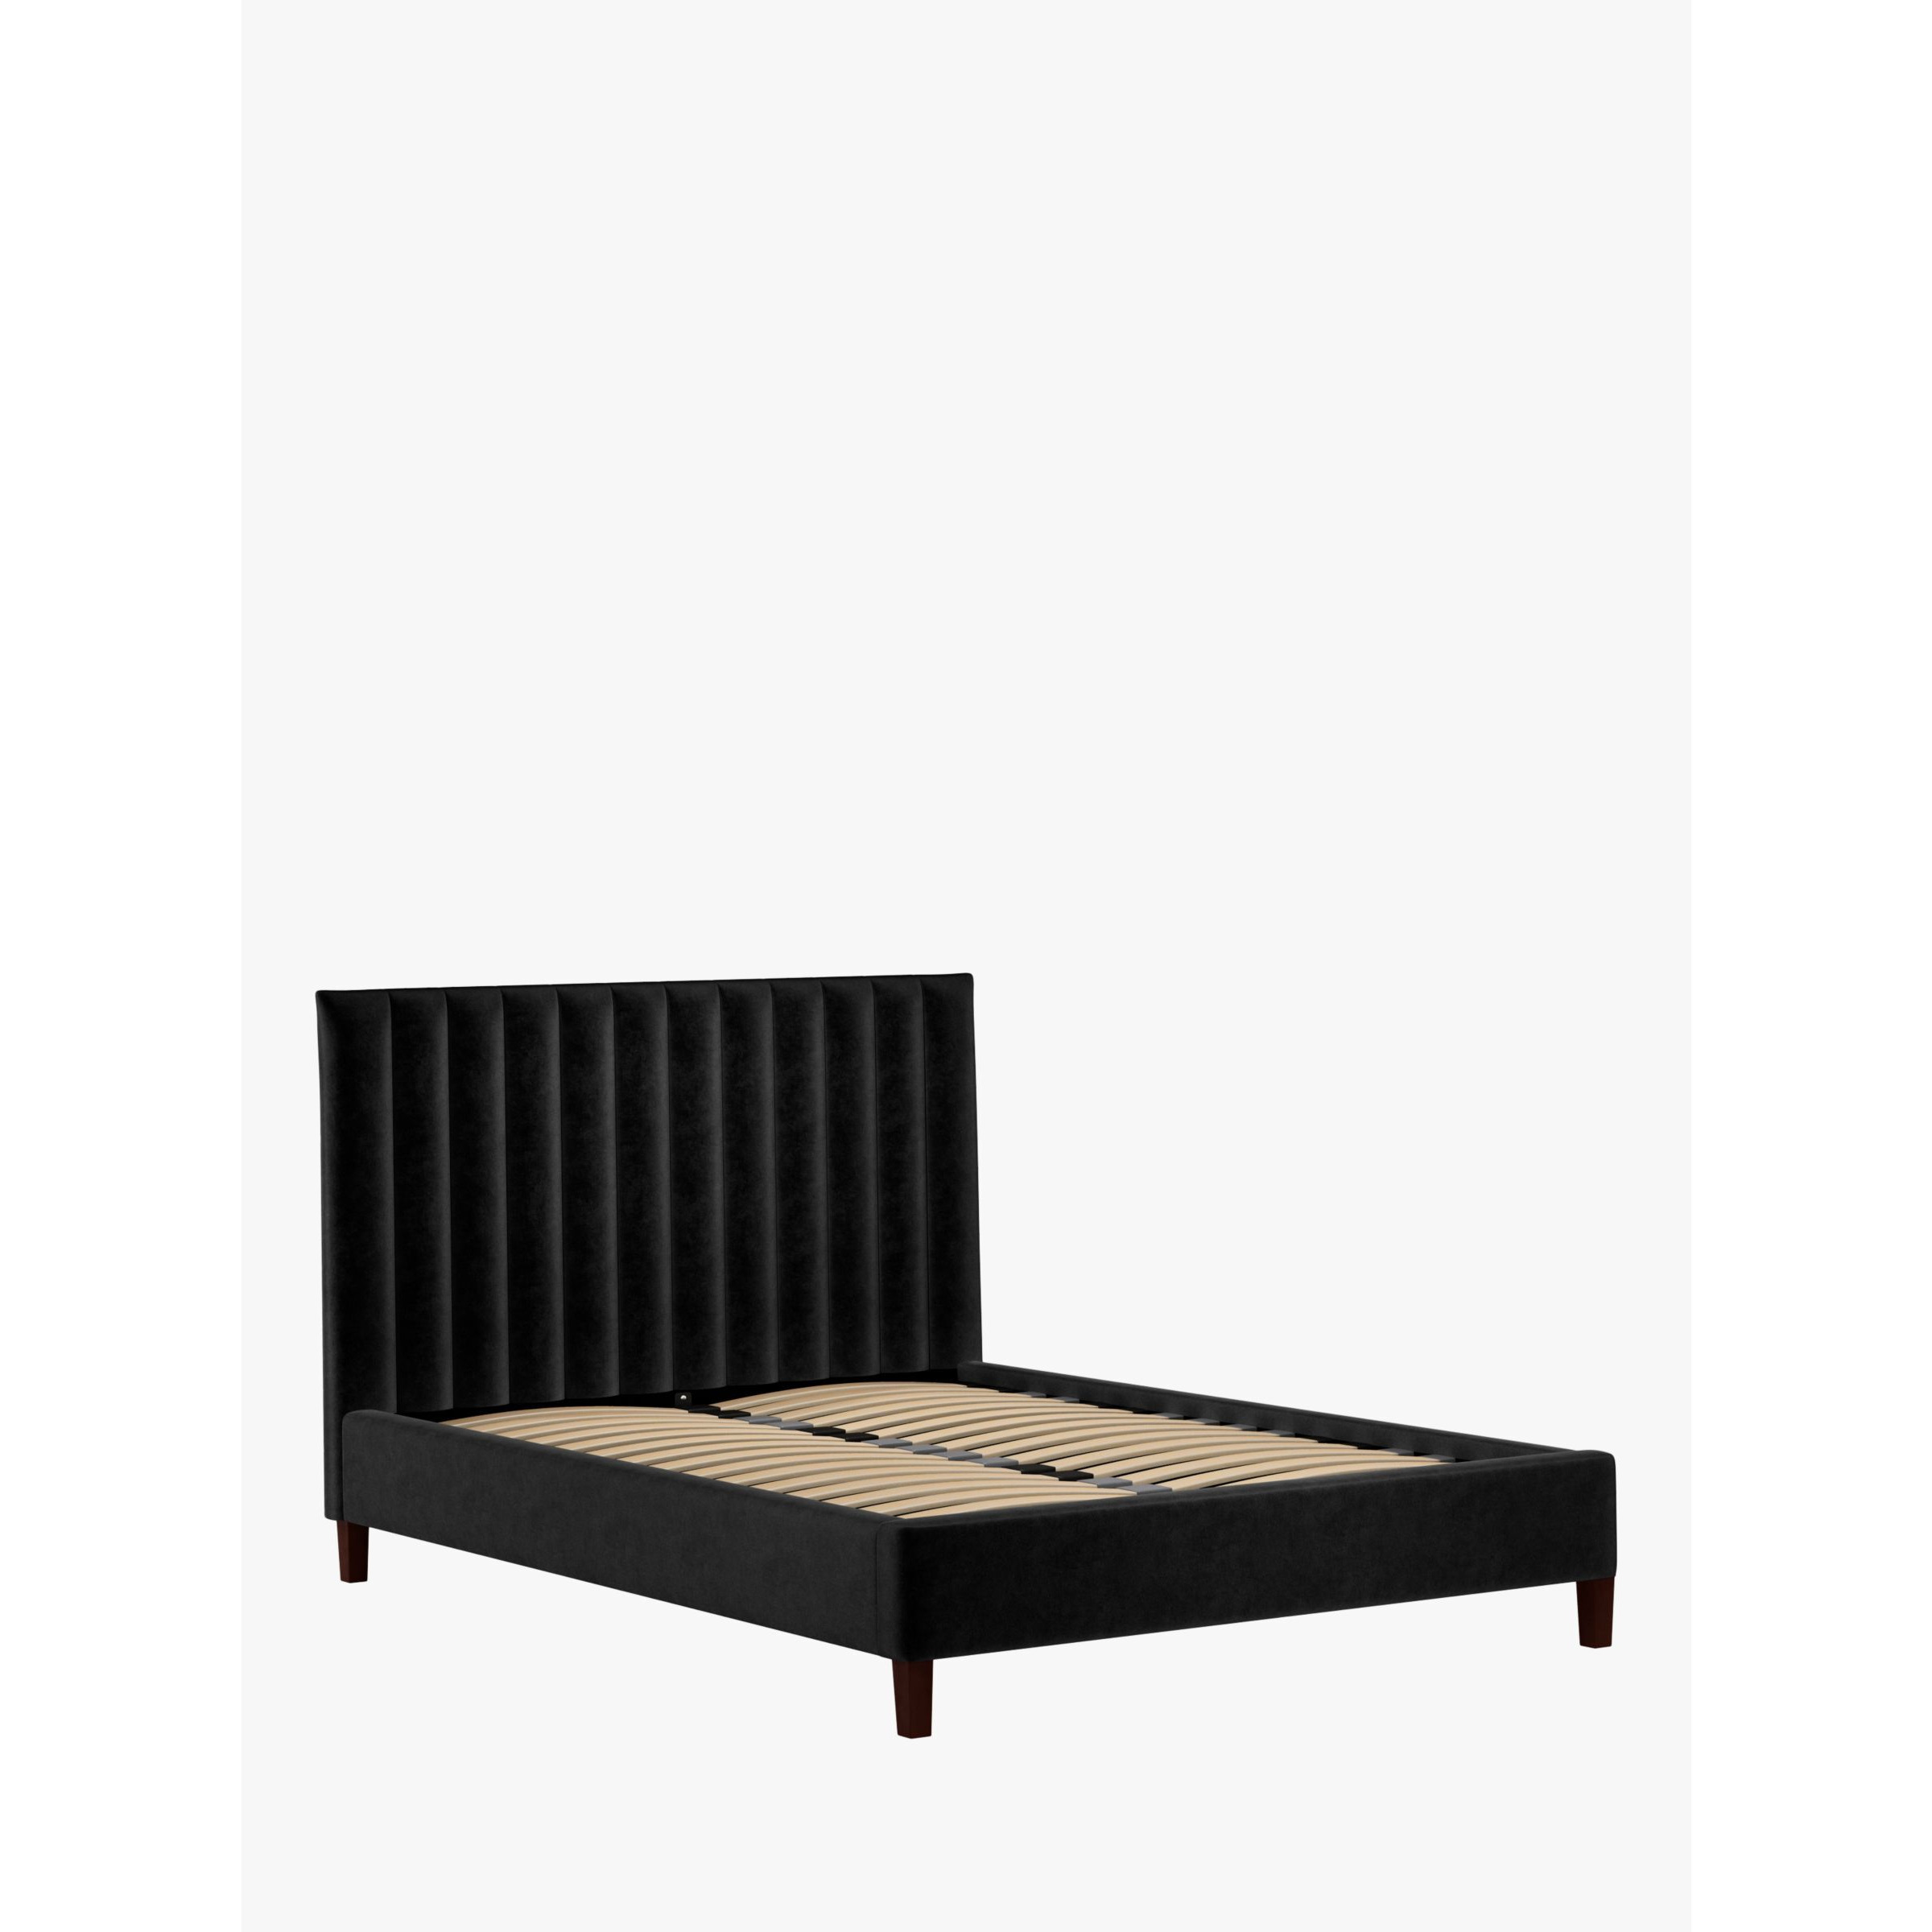 John Lewis Fluted Upholstered Bed Frame, Super King Size - image 1